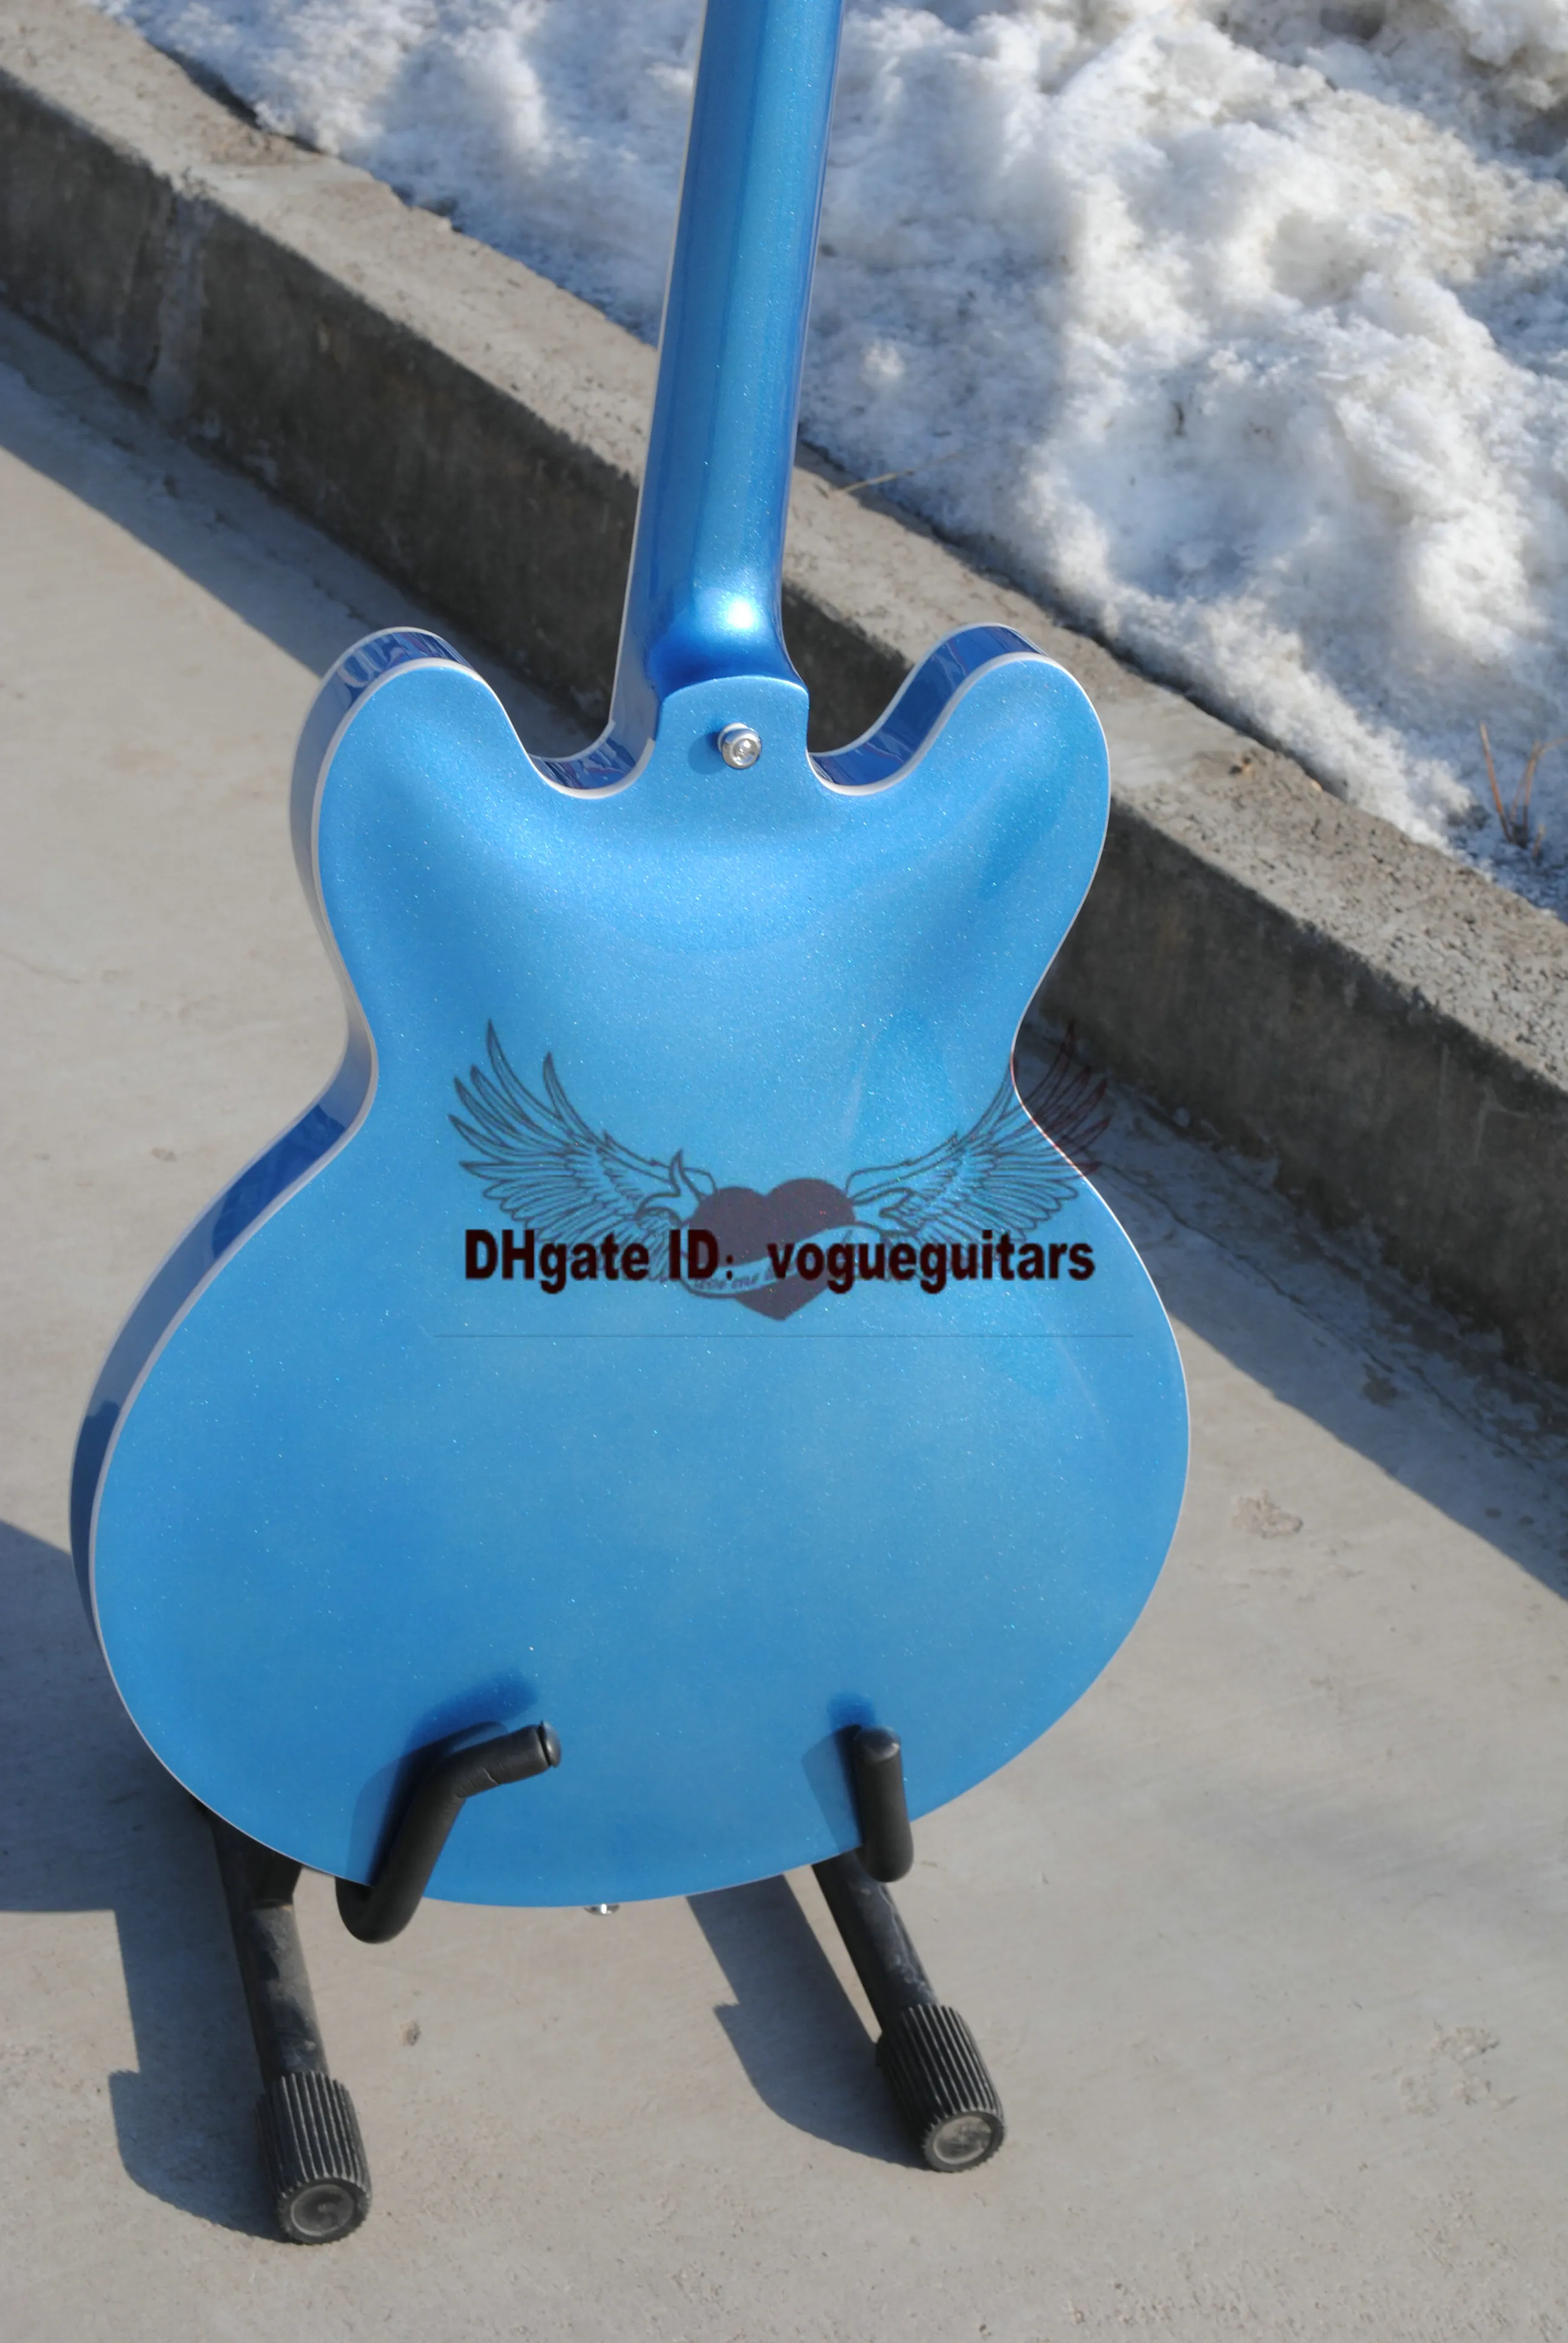 Chitarra elettrica personalizzata all'ingrosso e al dettaglio con tremolo in blu Spedizione gratuita di alta qualità secondo la richiesta di colore personalizzato